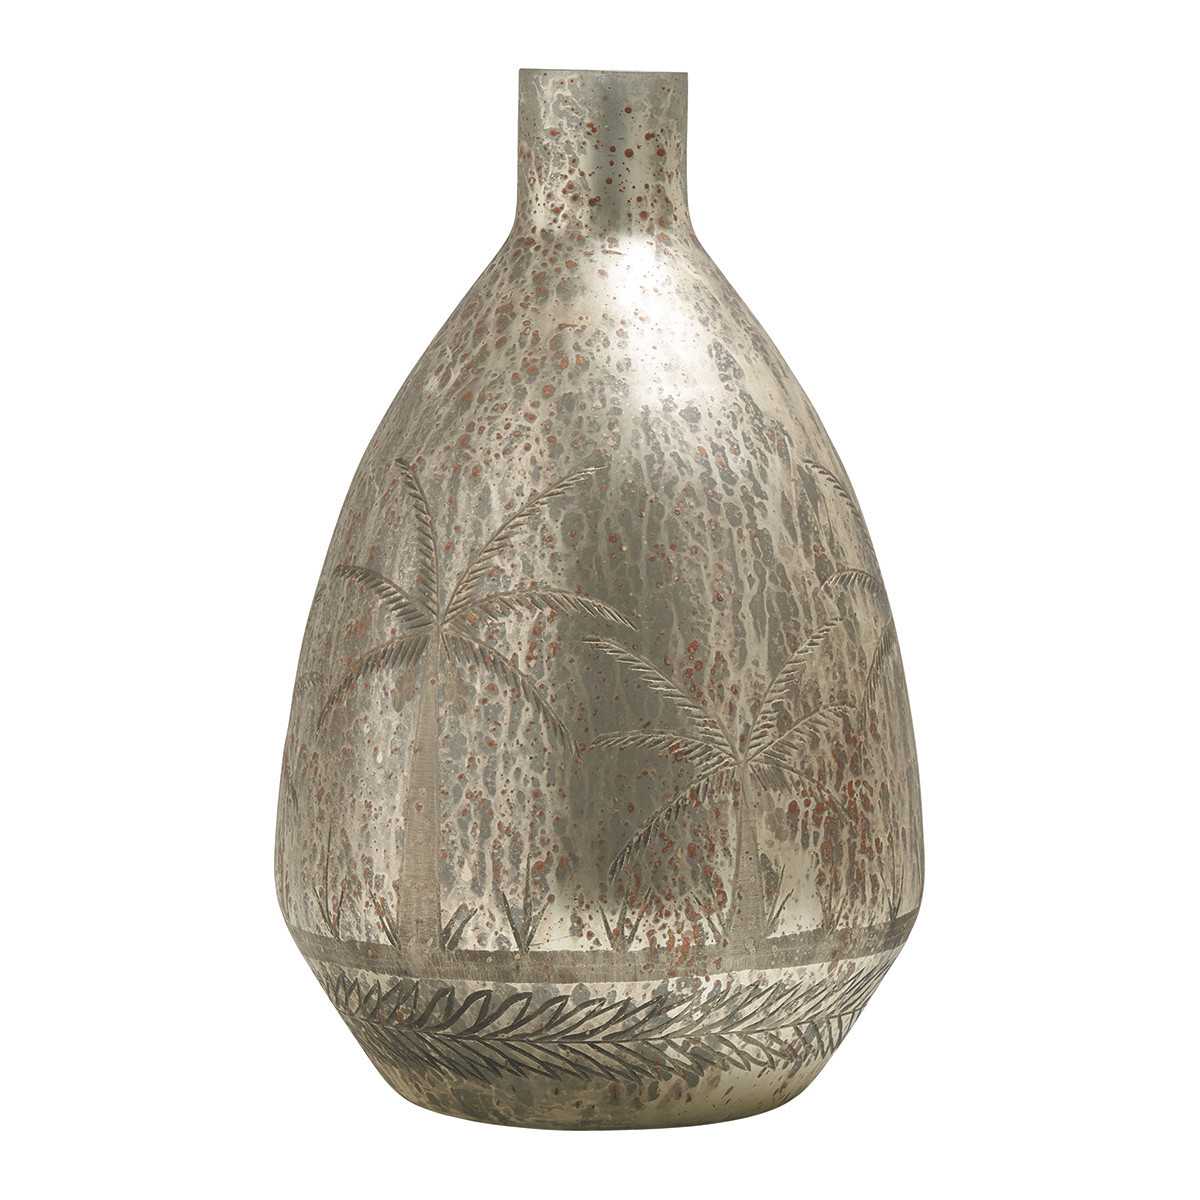 INTERIEUR- DECORATION|Antique gold mirage vase matteBLANC D'IVOIREVases